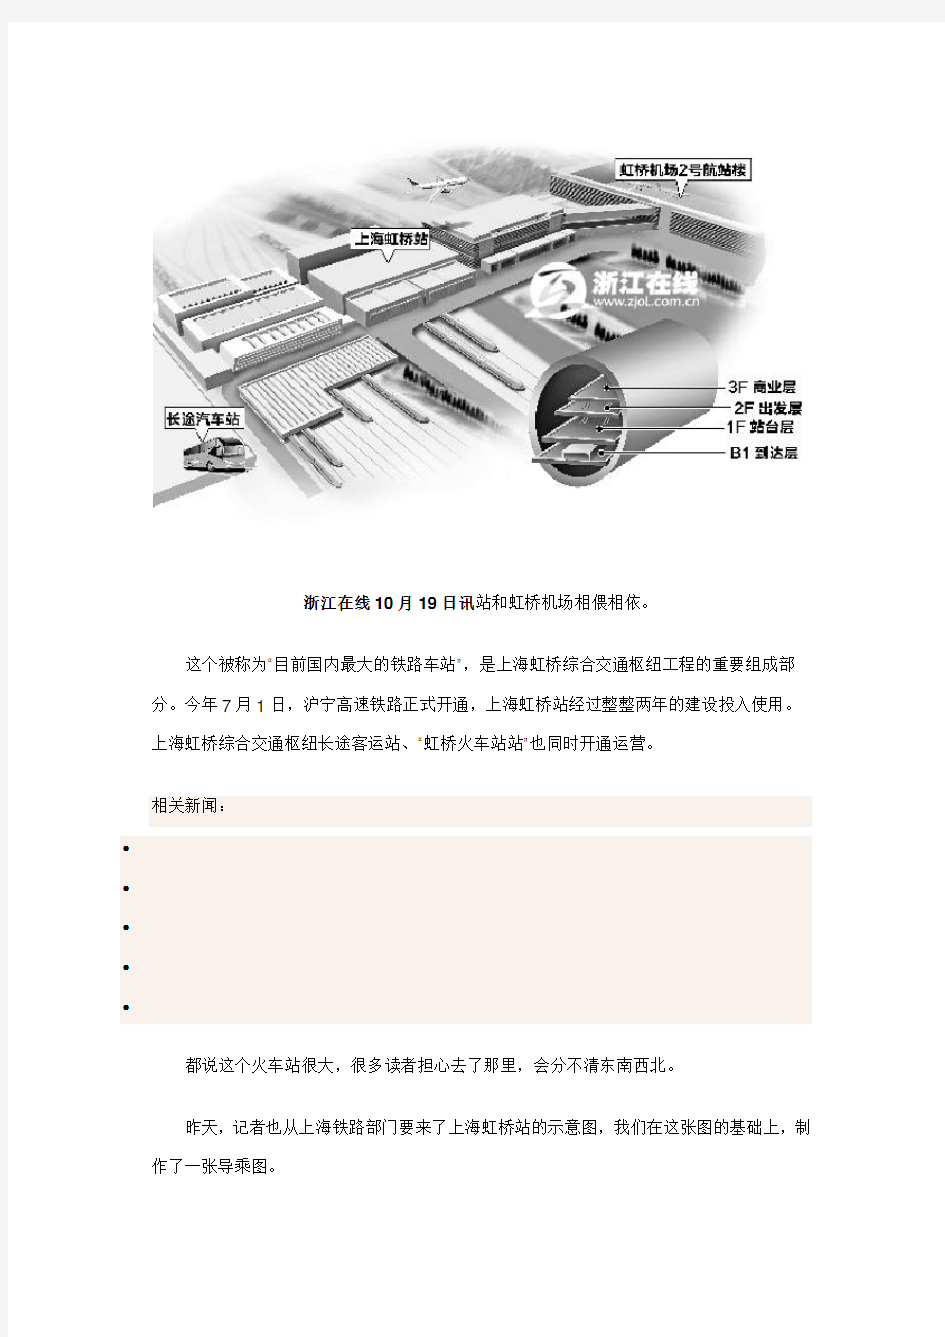 本网绘制详尽导乘图让你在上海虹桥站不迷路